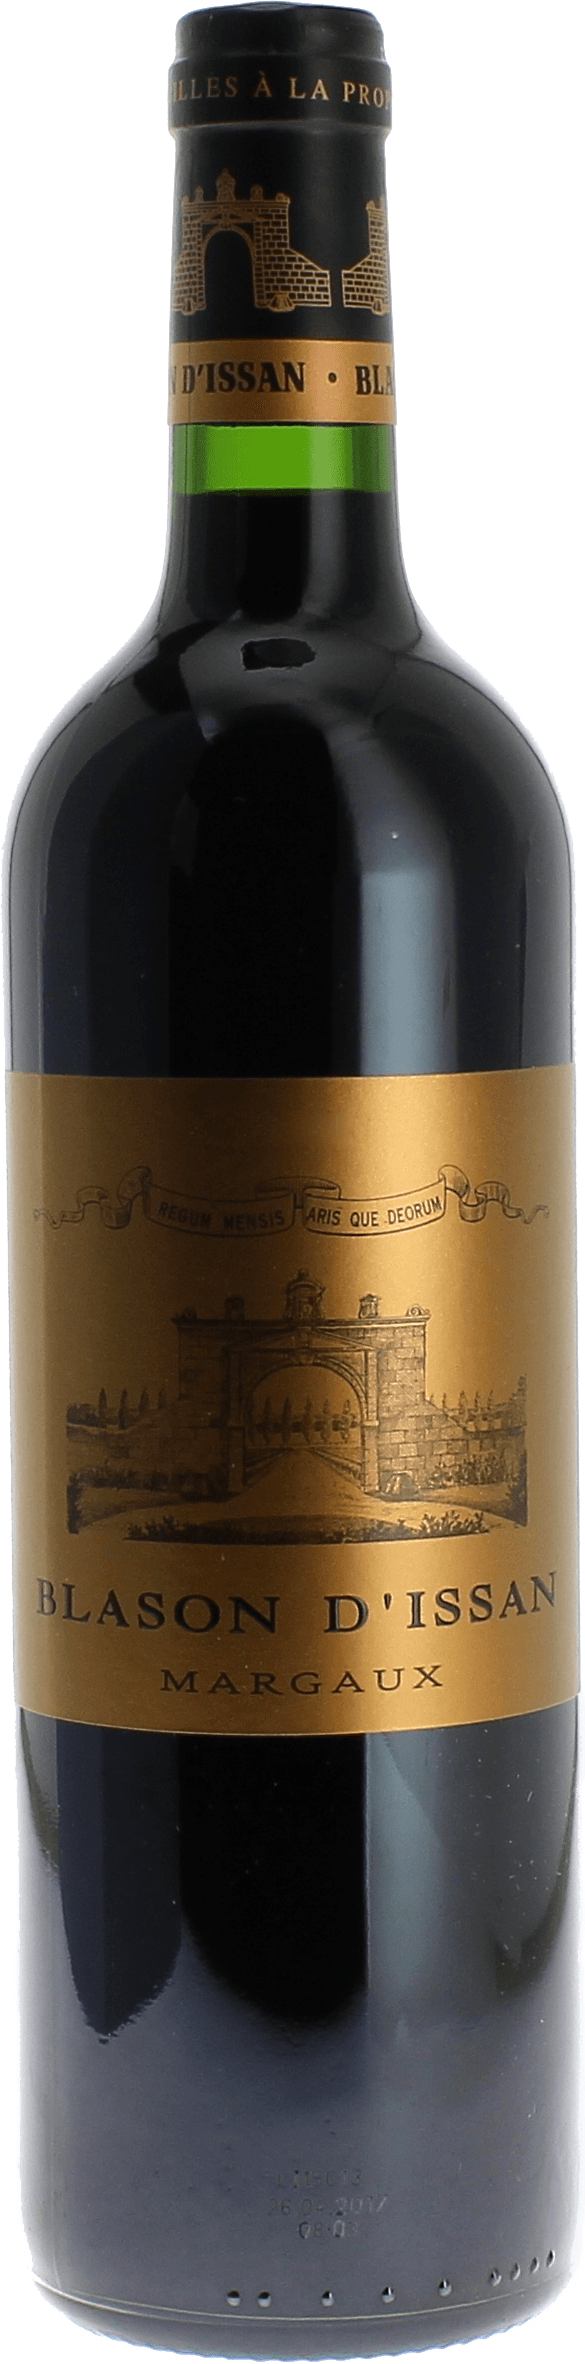 Blason d'issan margaux 2015 2nd vin du Chteau D'Issan Margaux, Bordeaux rouge